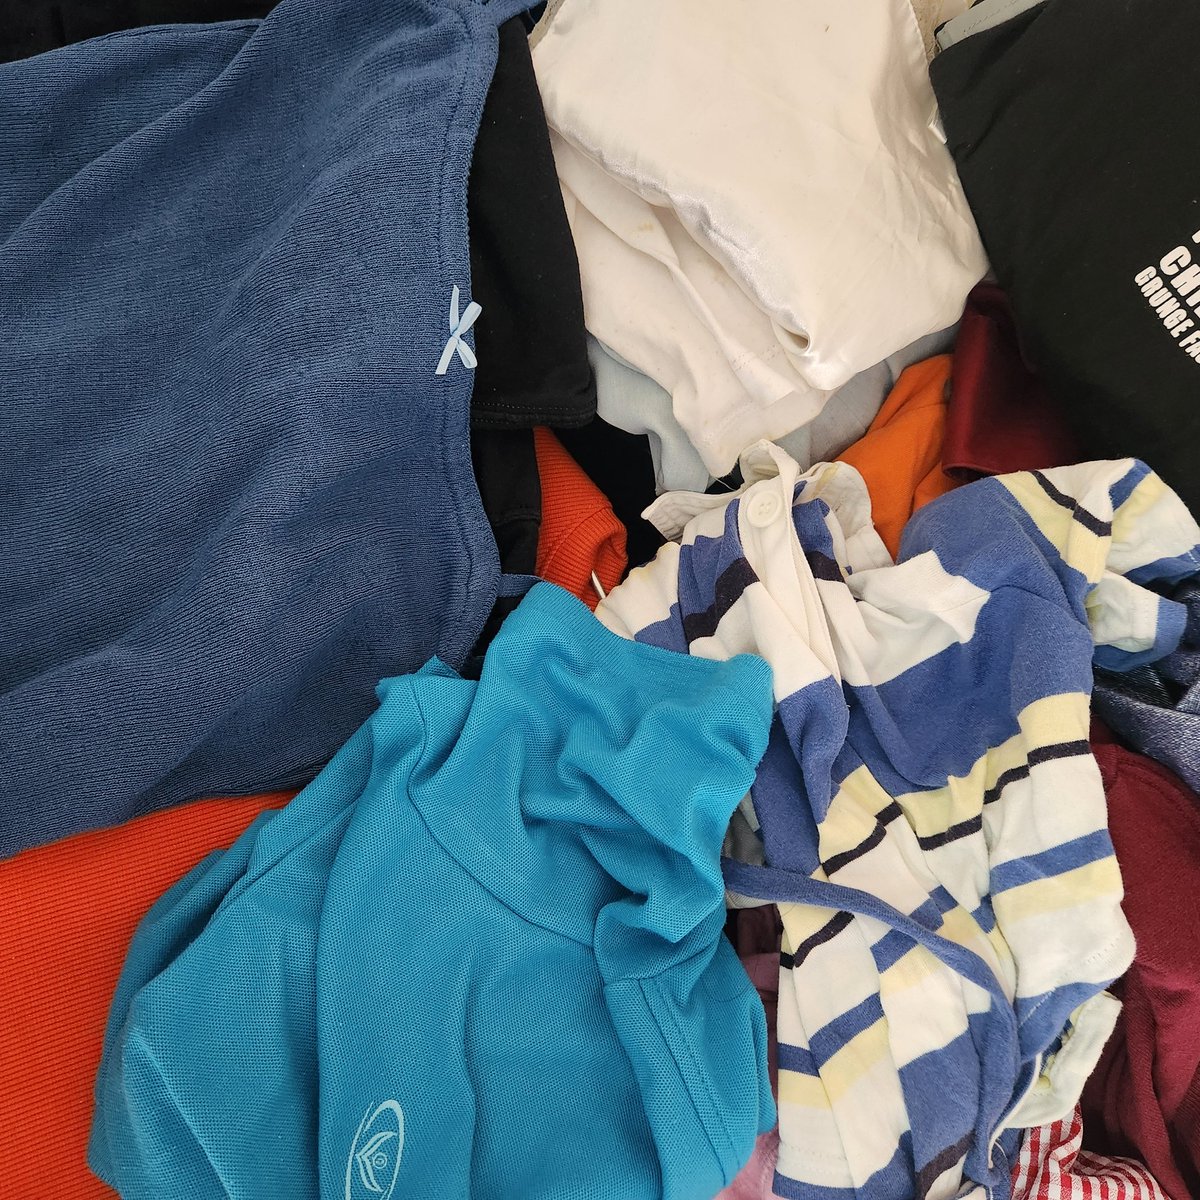 ส่งต่อเสื้อผ้ามือสอง ของเราเอง
🏷 ราคาเริ่มต้น 30 บาท

ลงวันที่ 23-25 / 05 / 2024
ใน ig : donottoldmypapa 🥣🧤

ทยอยลงคับมีเยอะมากกว่าในรูป เรียนจบแล้วกลับบ้านน 🏡 
『 shipping 40  : รี+ปัก ลด 5 บาท 』
#โล๊ะตู้ #ส่งต่อเสื้อผ้า #เสื้อผ้ามือสอง #สินค้ามือสอง #โล๊ะตู้มือสอง